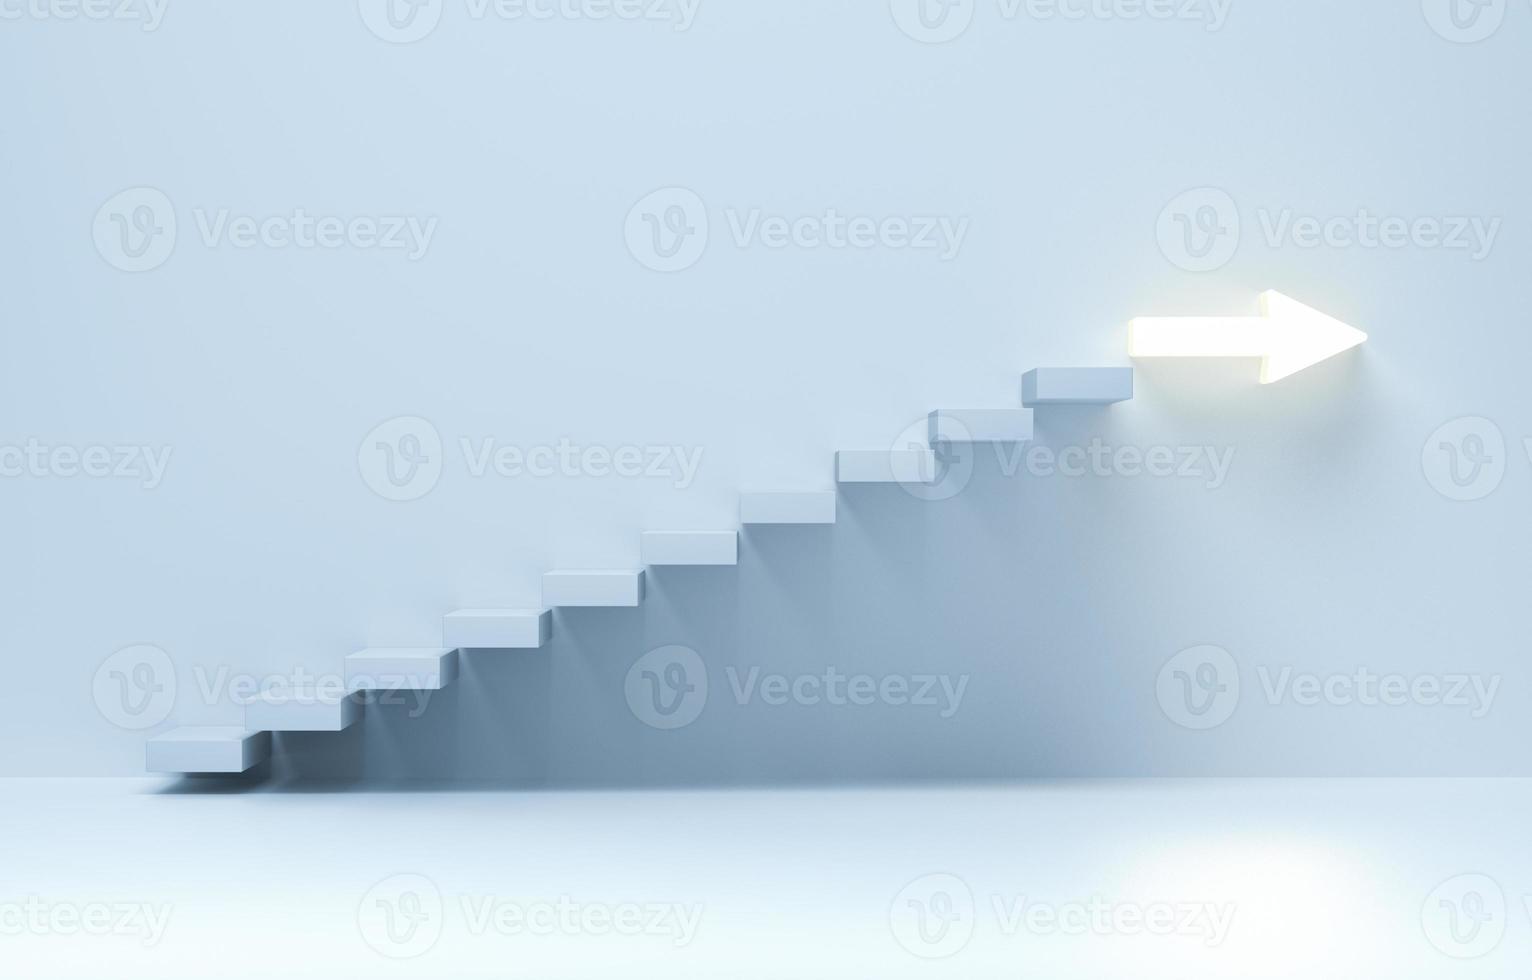 escaleras que suben, escaleras ascendentes de escalera ascendente a flecha. foto